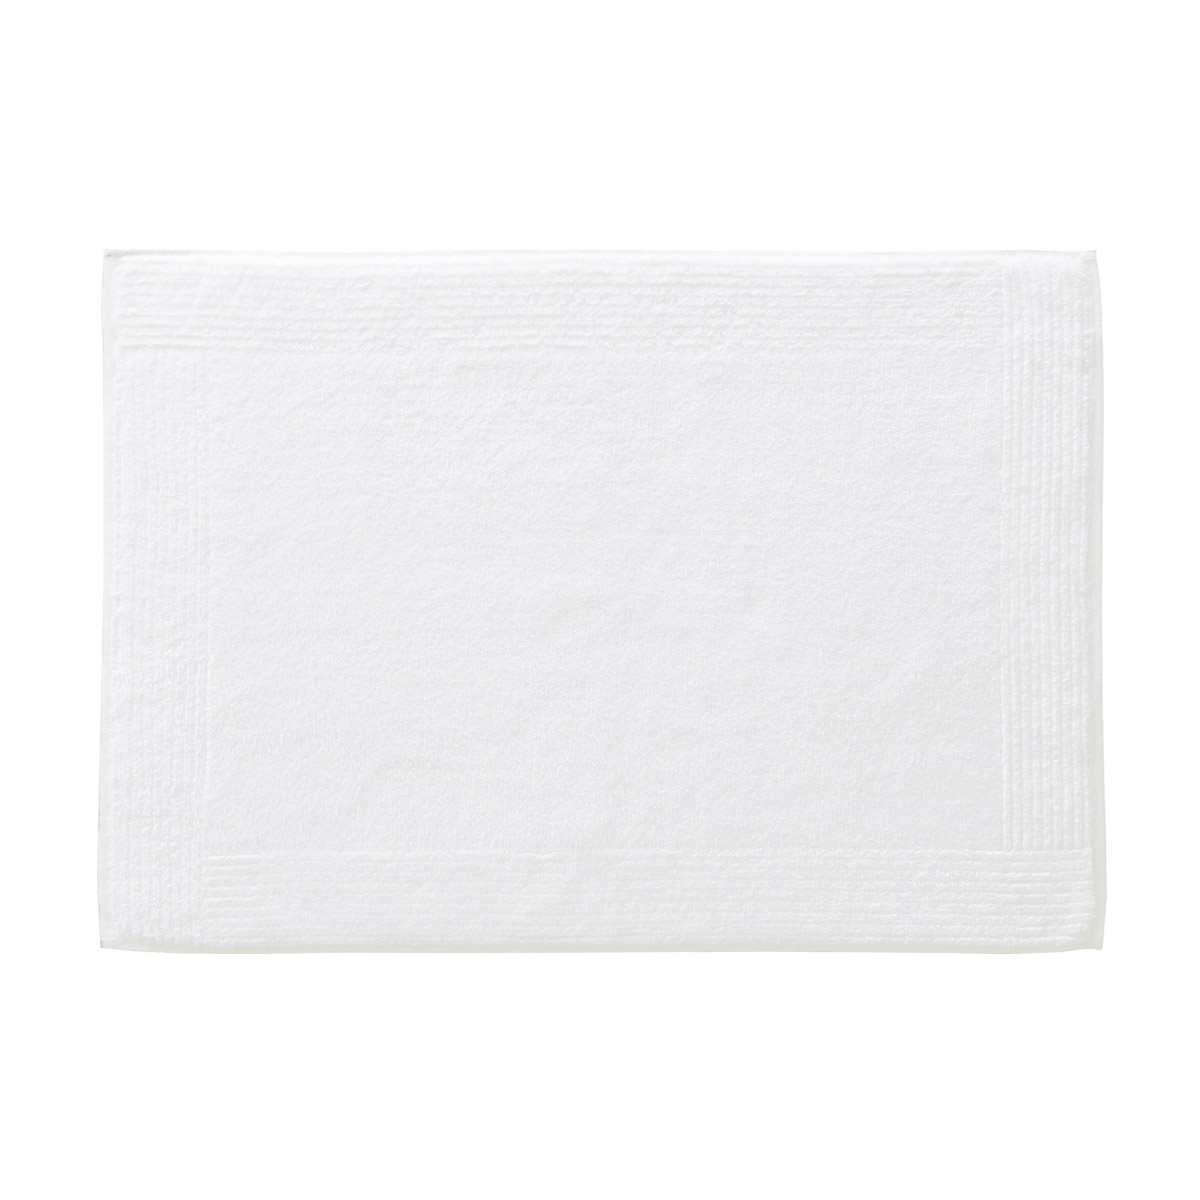 Tapis de bain coton peigné Blanc 50 x 70 cm